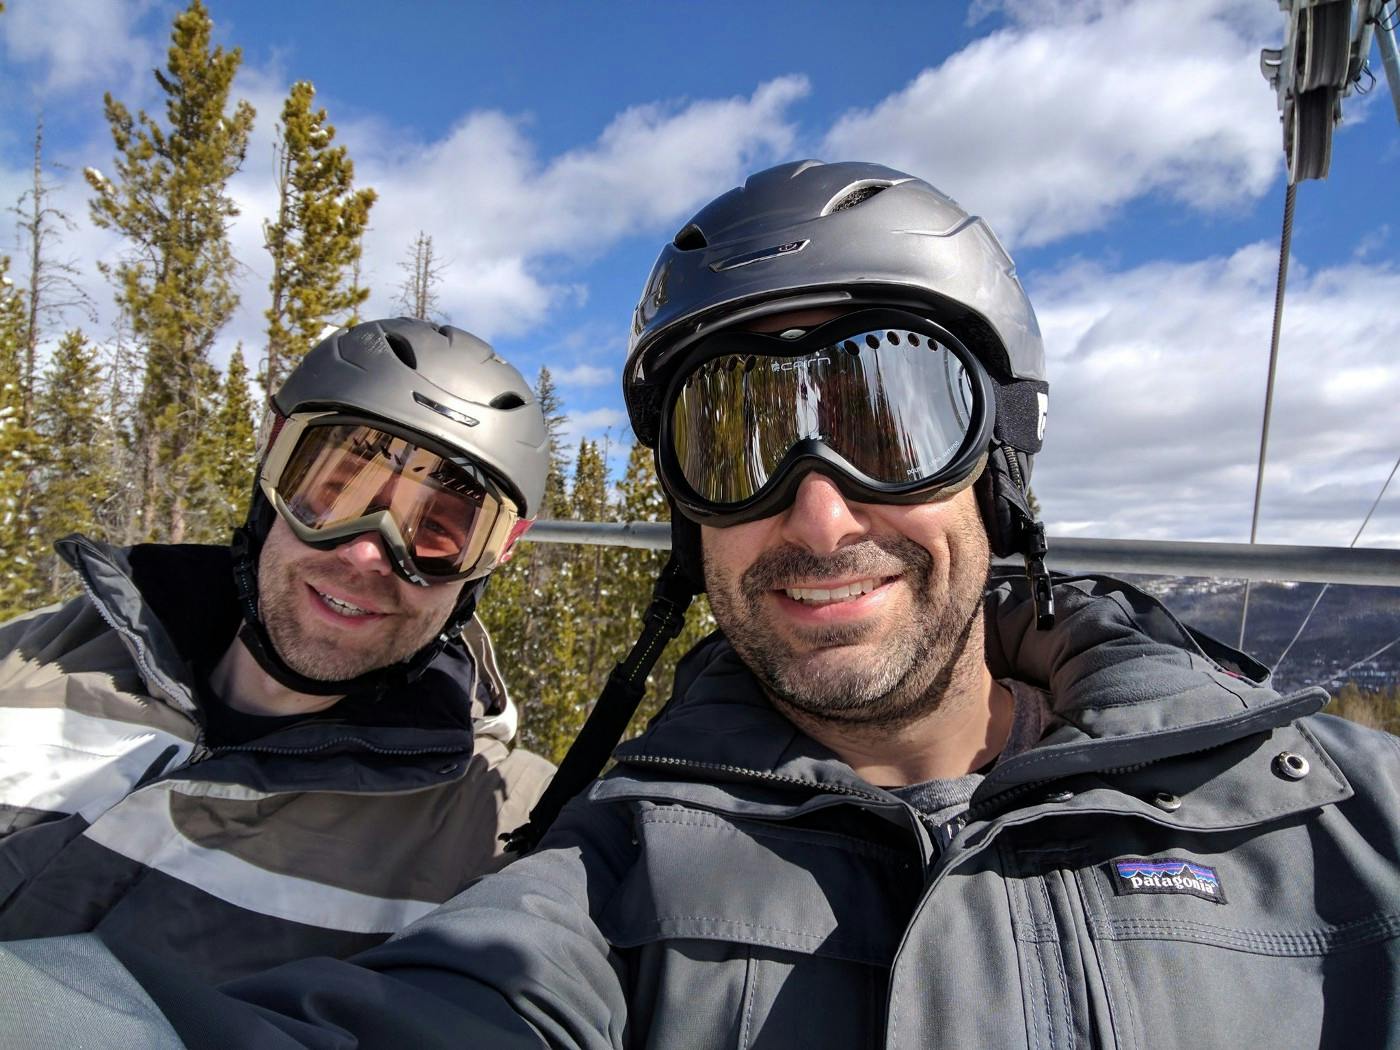 Chris Ball and Michael Yared on ski lift